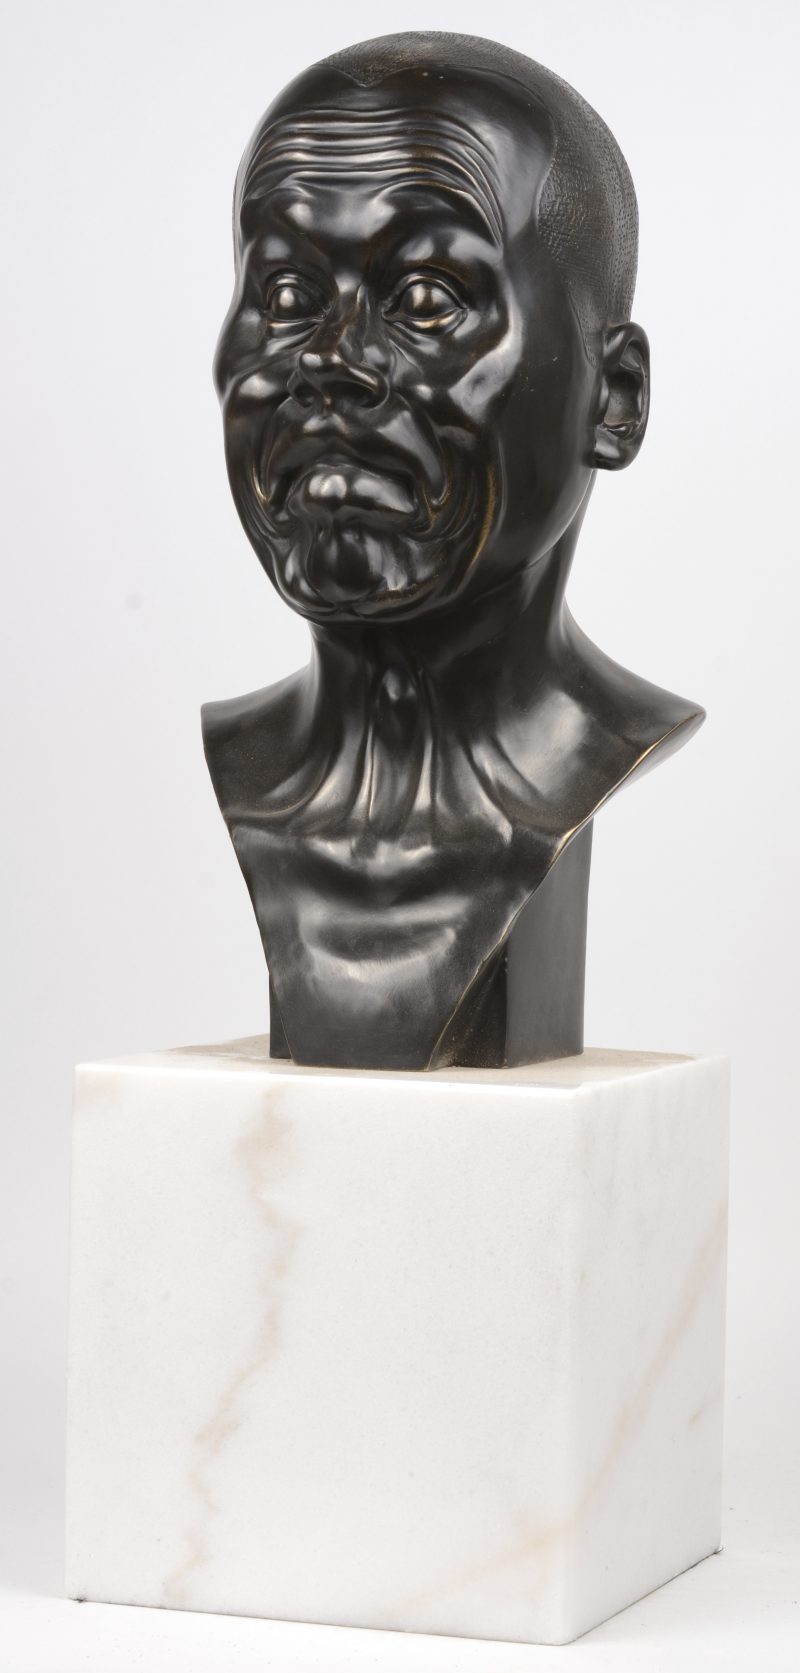 “Charakterkopf””. Een expressieve bronzen buste op een wit marmeren sokkel. Naar het voorbeeld van Franz Wavier Messerschmitt.